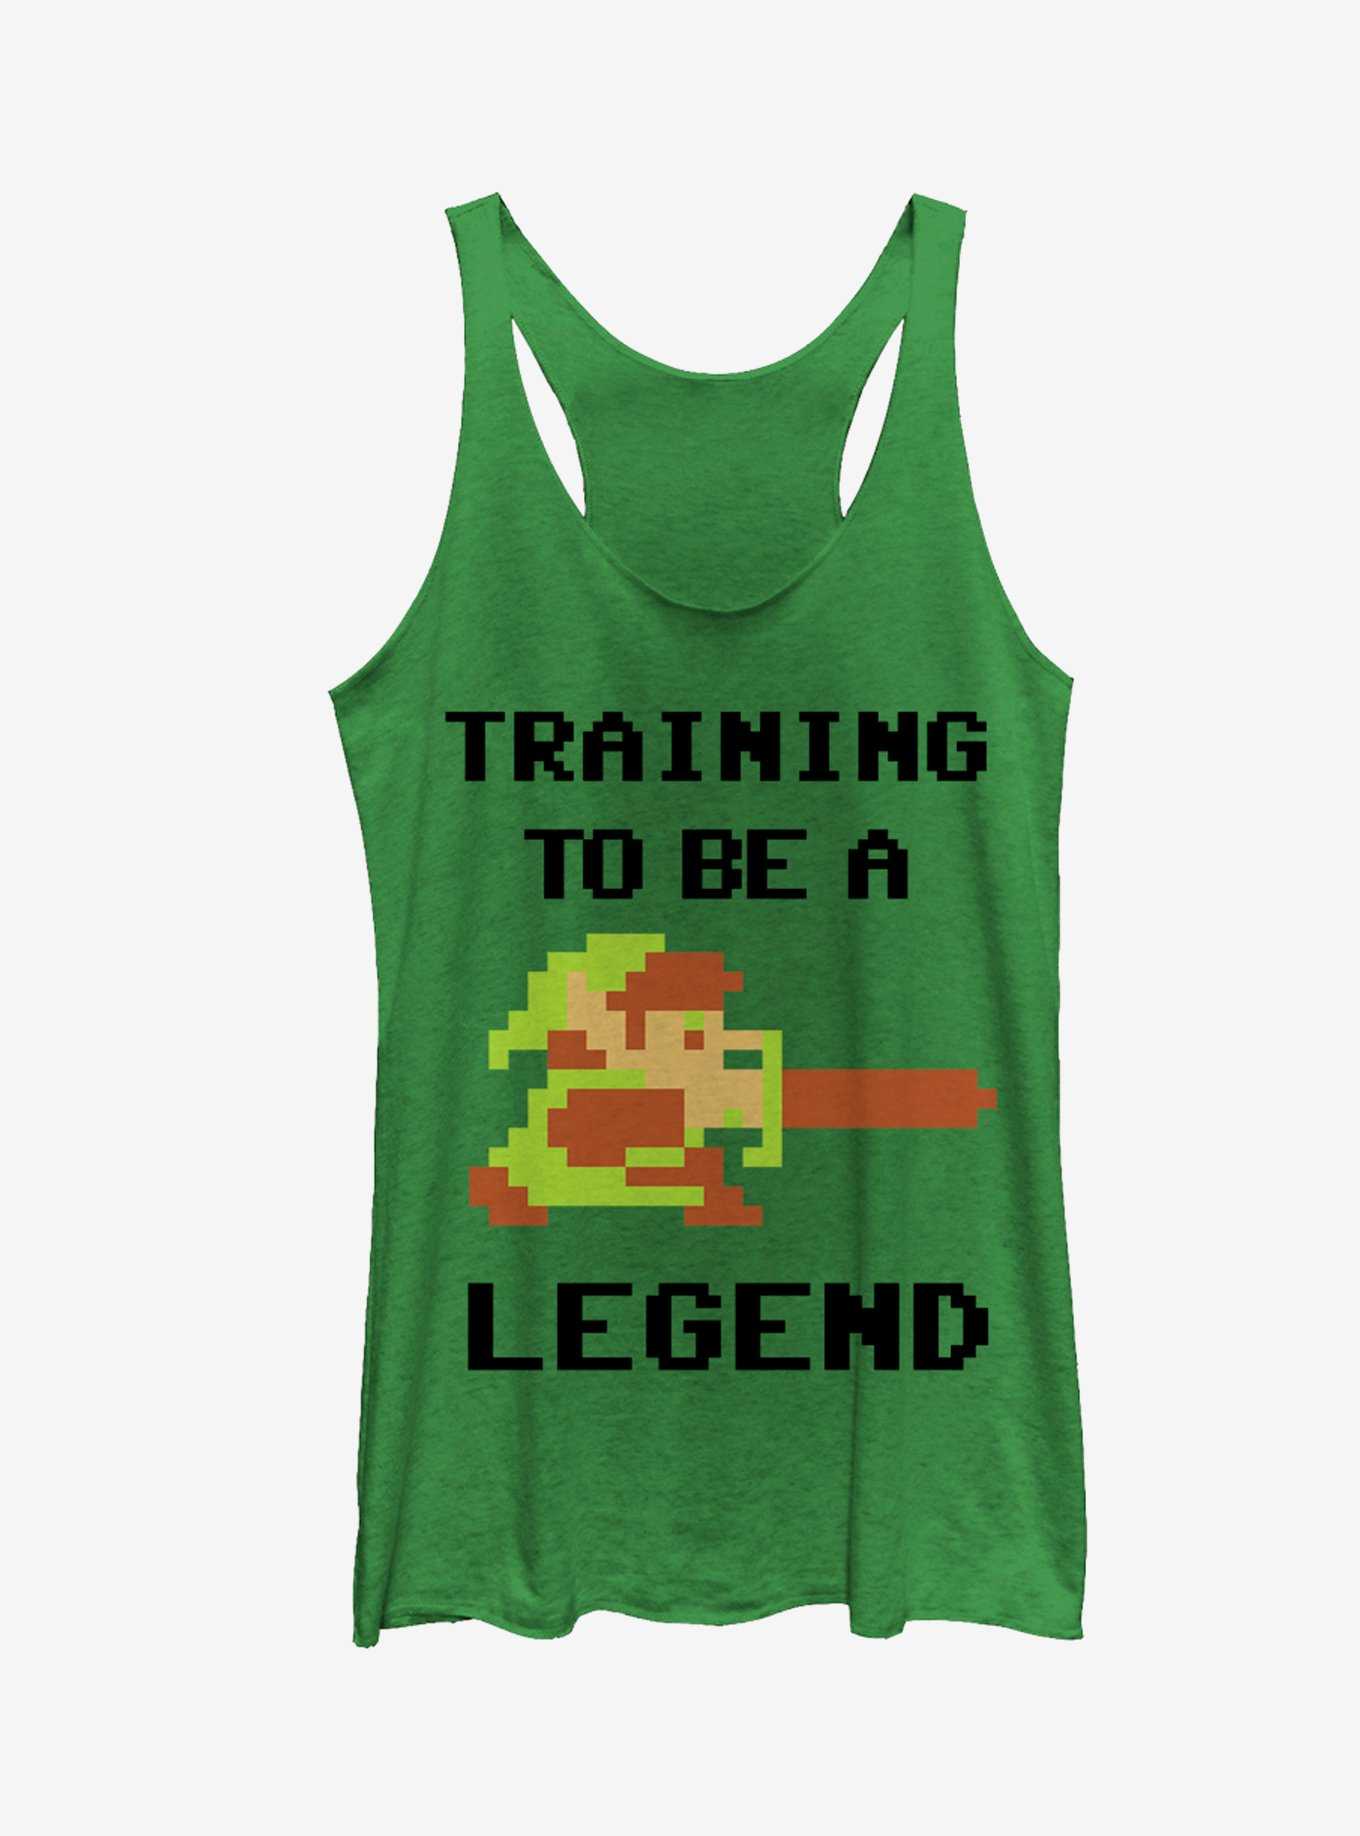 Nintendo Legend of Zelda Link Training Girls Tanks, , hi-res